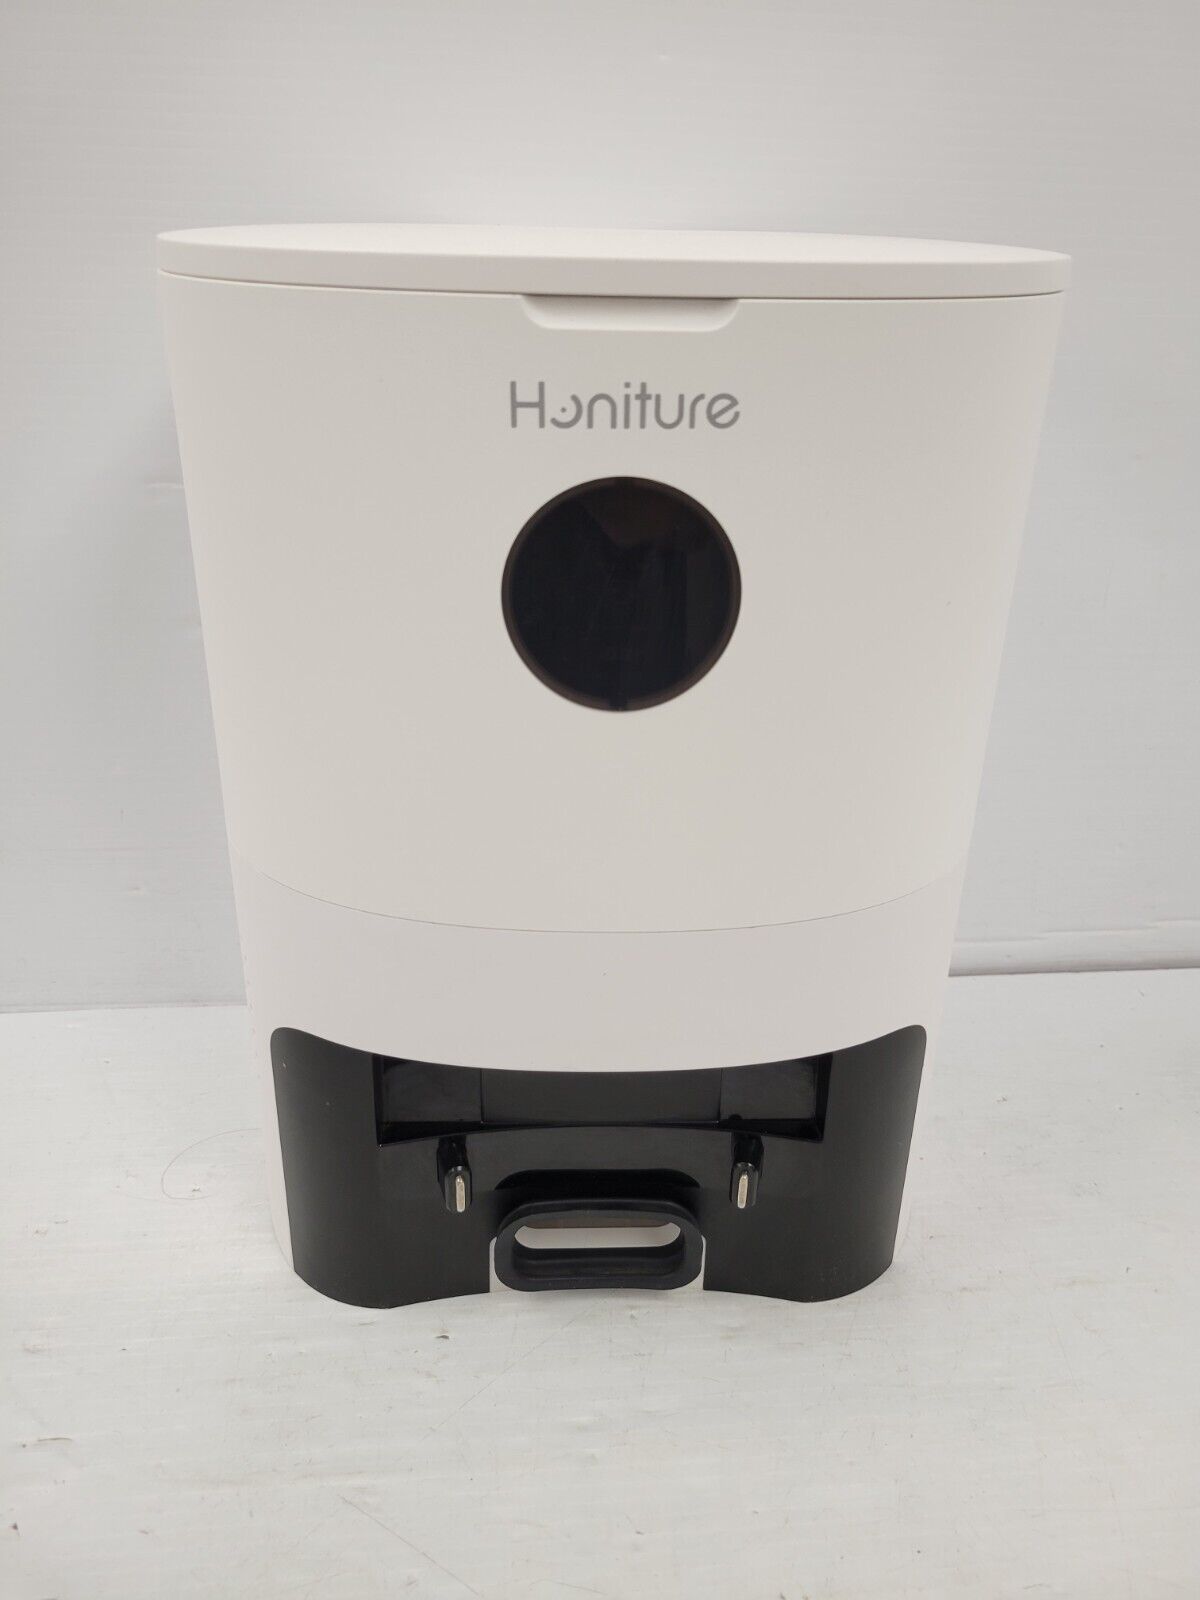 (57384-1) Honiture Q6 Pro Vacuum